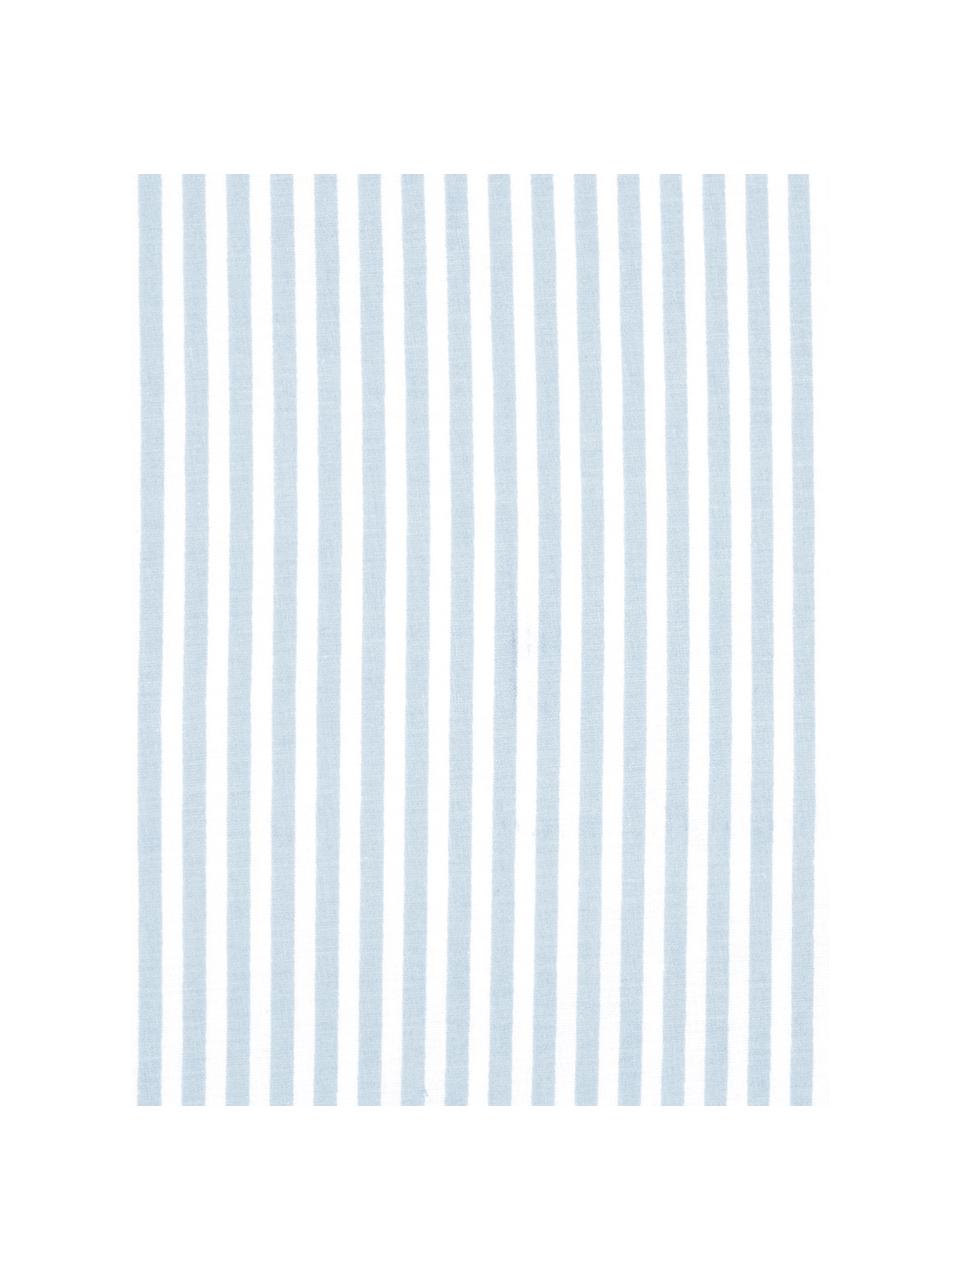 Oboustranné pruhované povlečení z bavlny Lorena, Bílá, světle modrá, 140 x 200 cm + 1 polštář 80 x 80 cm